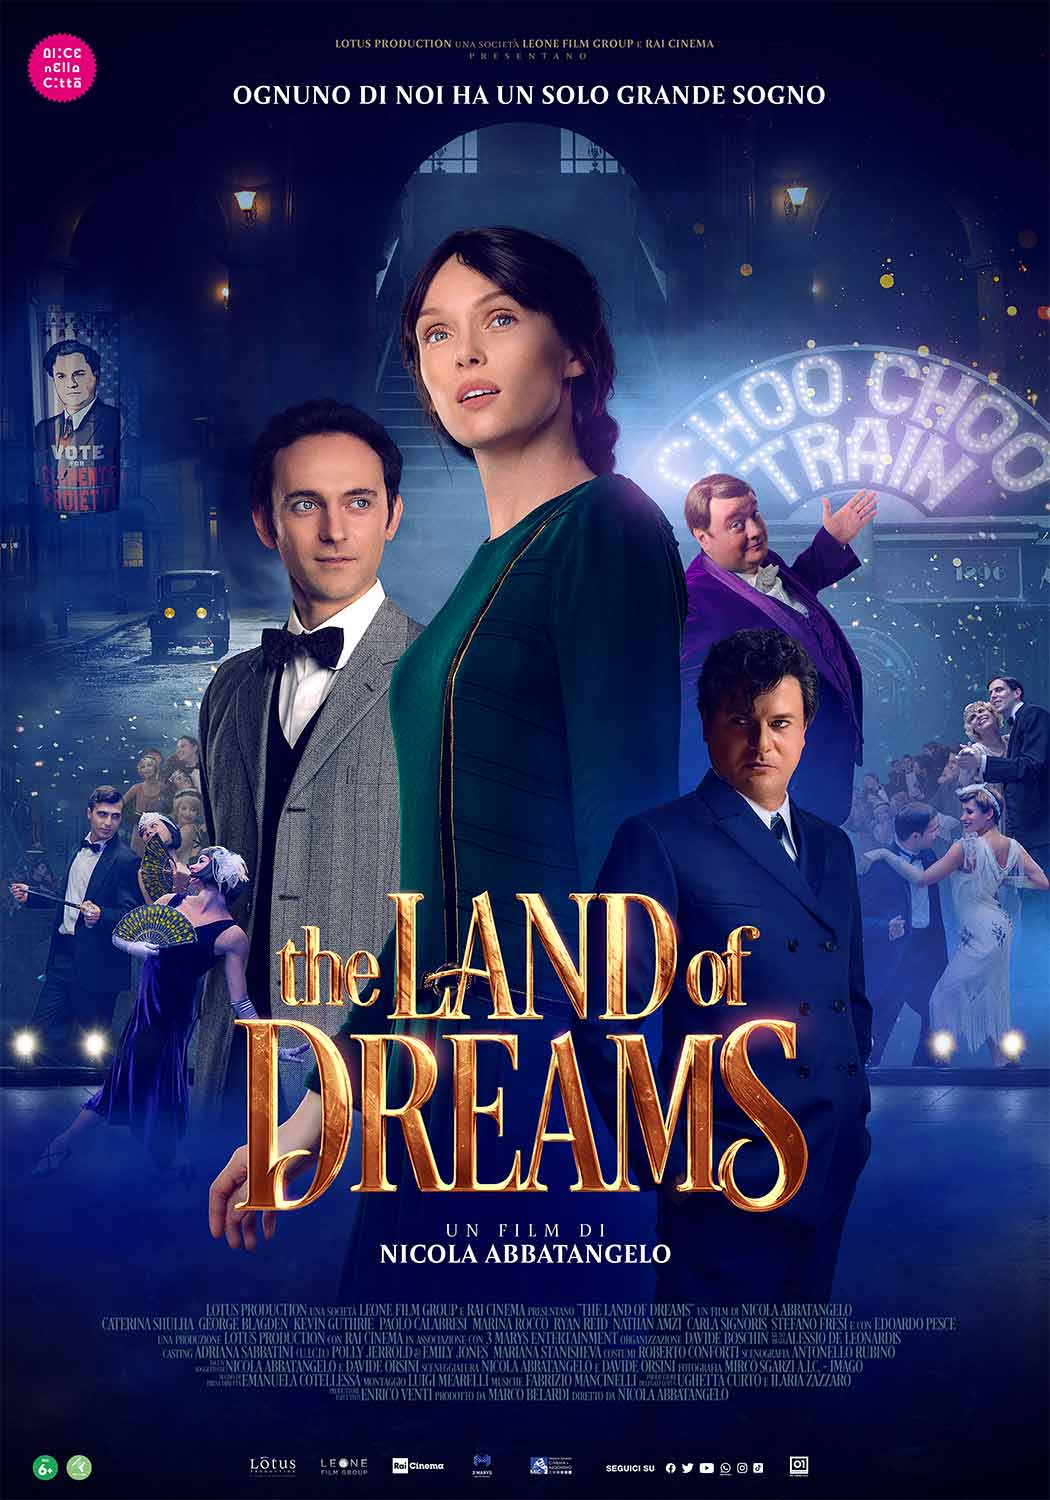 La locandina del film The Land of Dreams di Nicola Abbatangelo